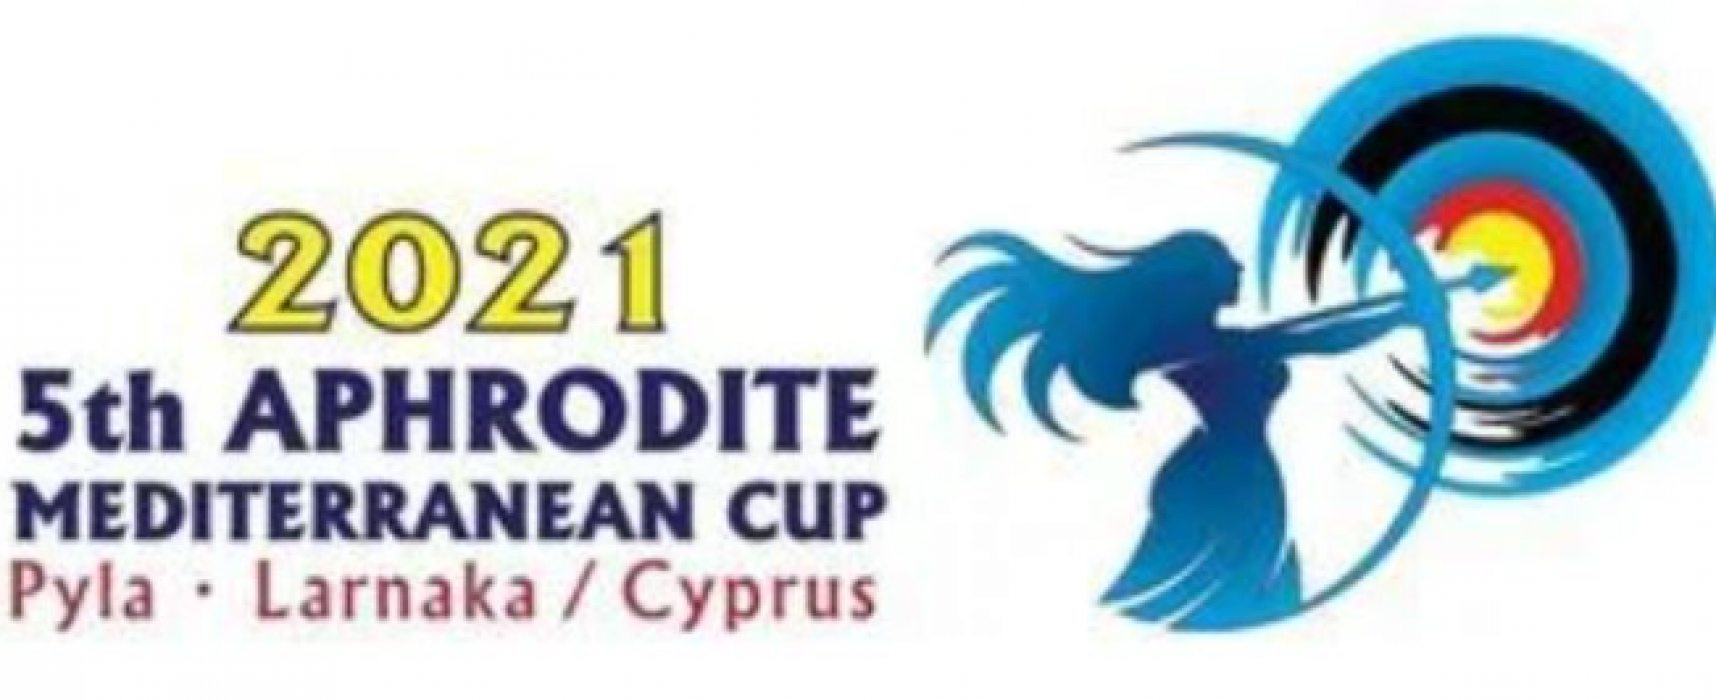 5th APHRODITE MEDITERRANEAN CUP 2021 Αποτελέσματα γύρων κατάταξης και ομαδικών Ολυμπιακού Τόξου